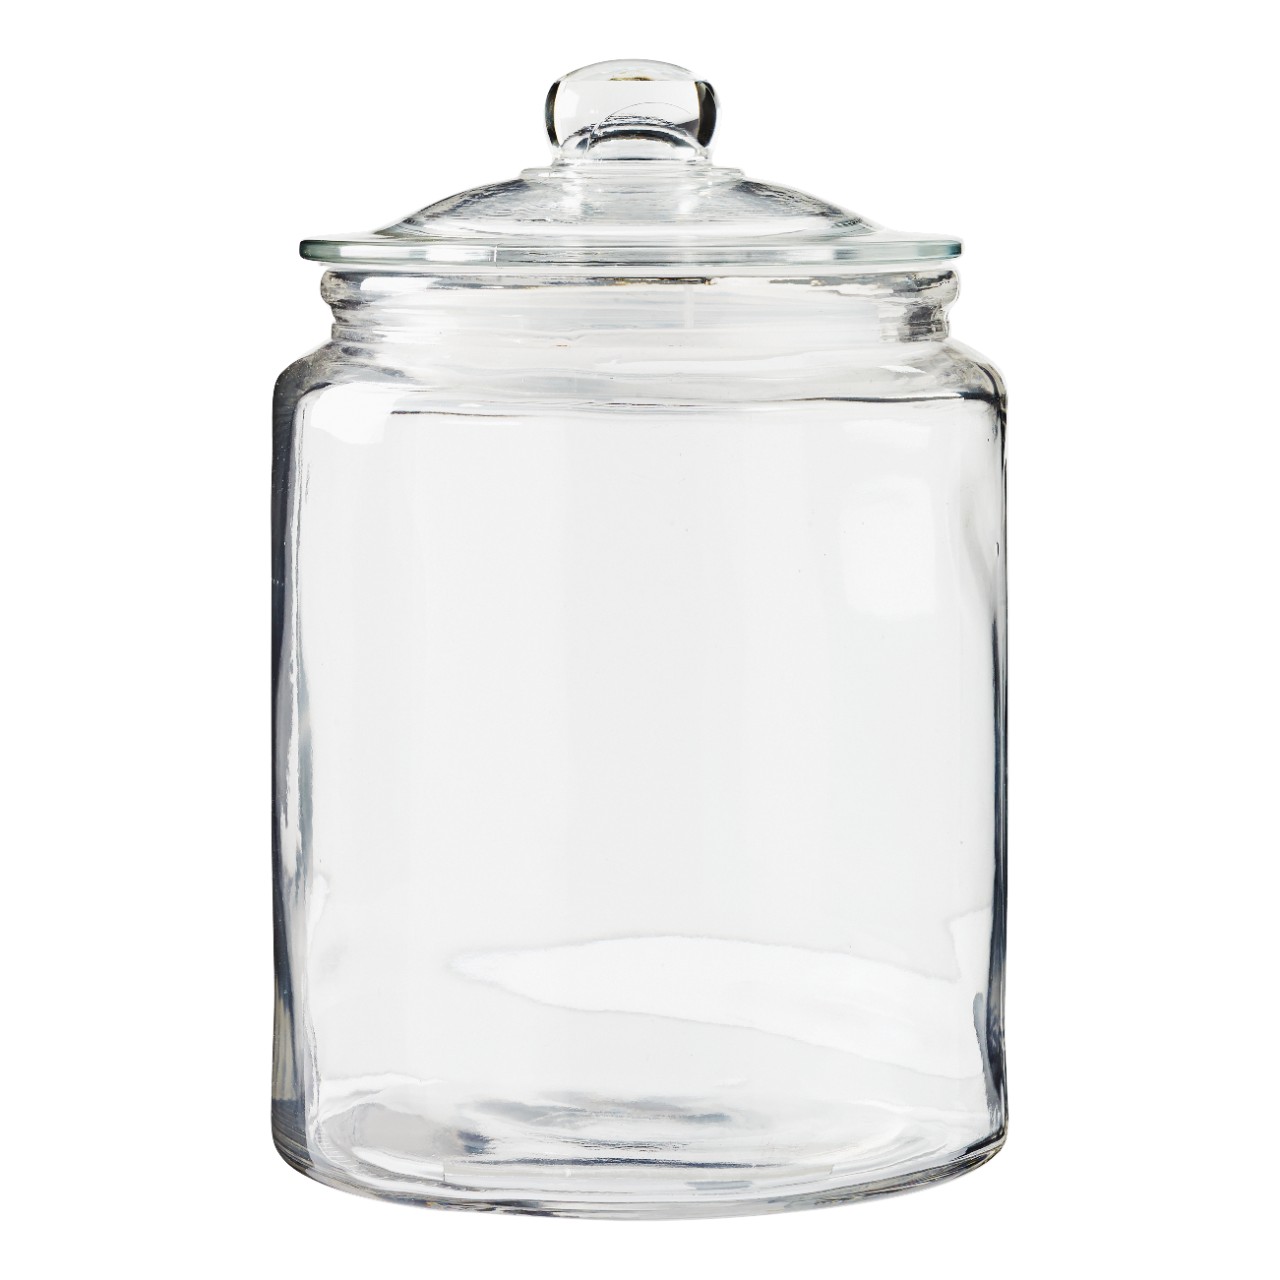 je bent lijst Ru Slimresto Voorraadpot 5.7 liter glas Per stuk | Sligro.nl